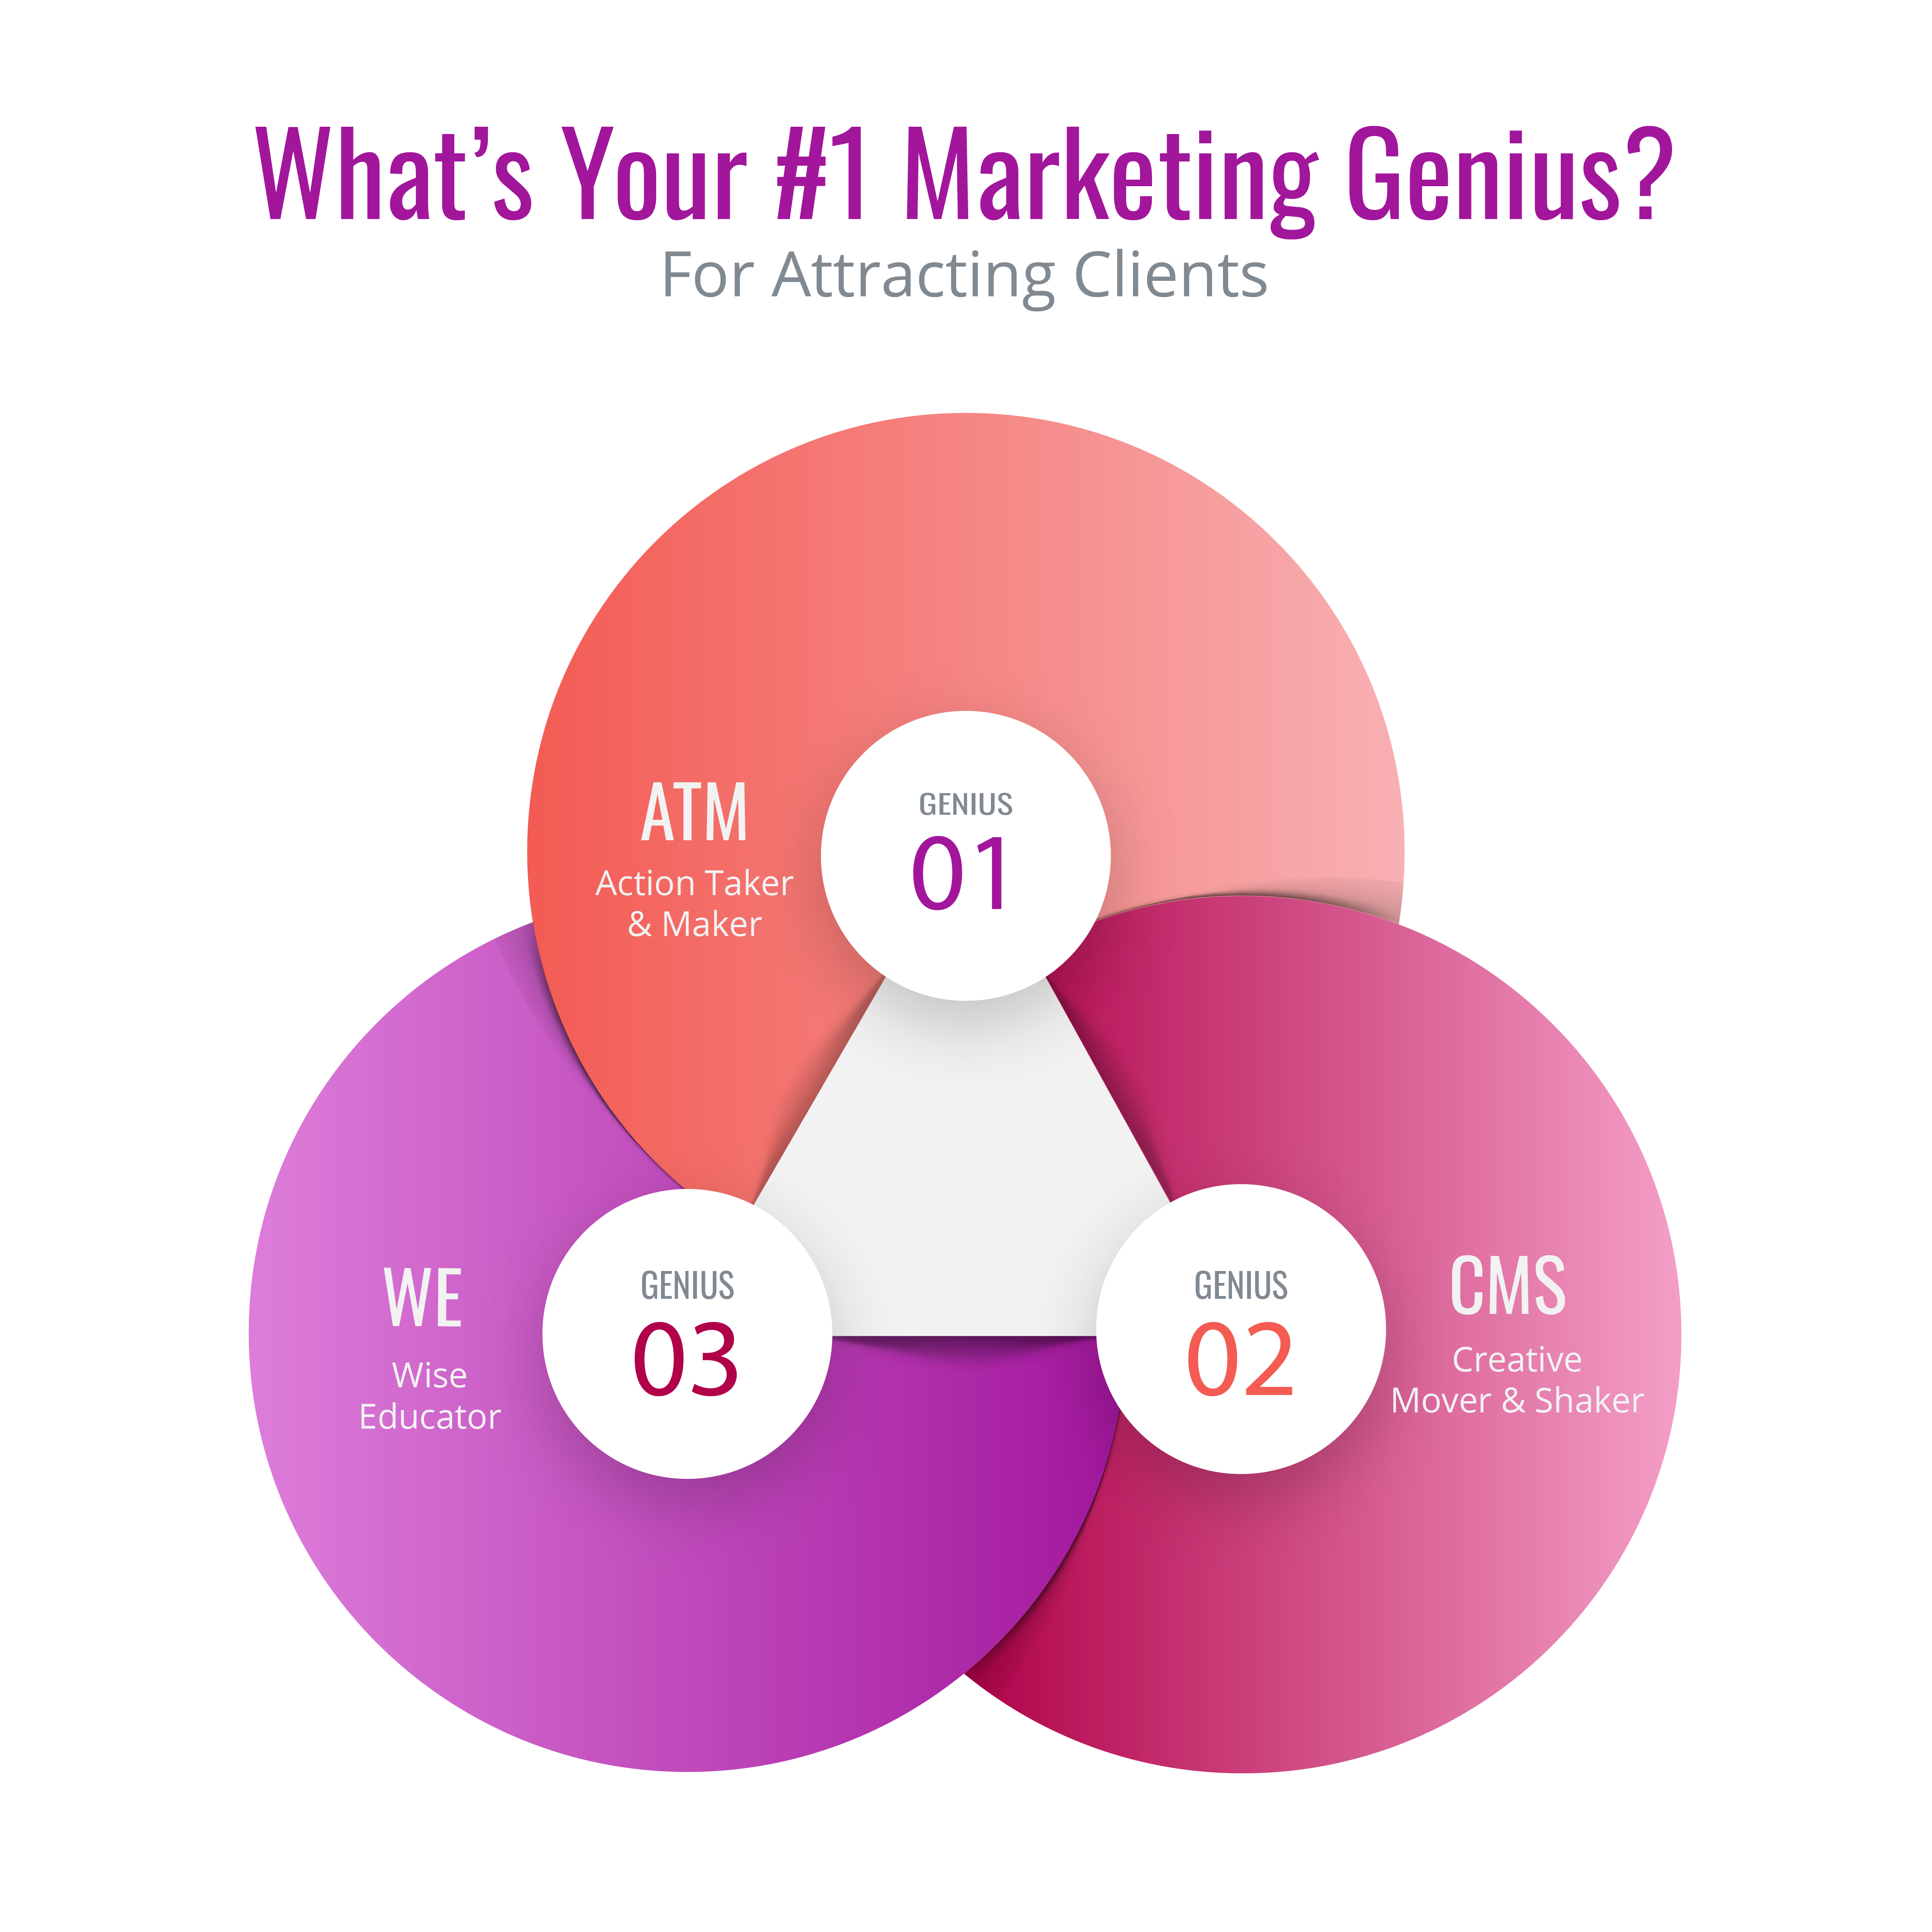 Your #1 Marketing Genius